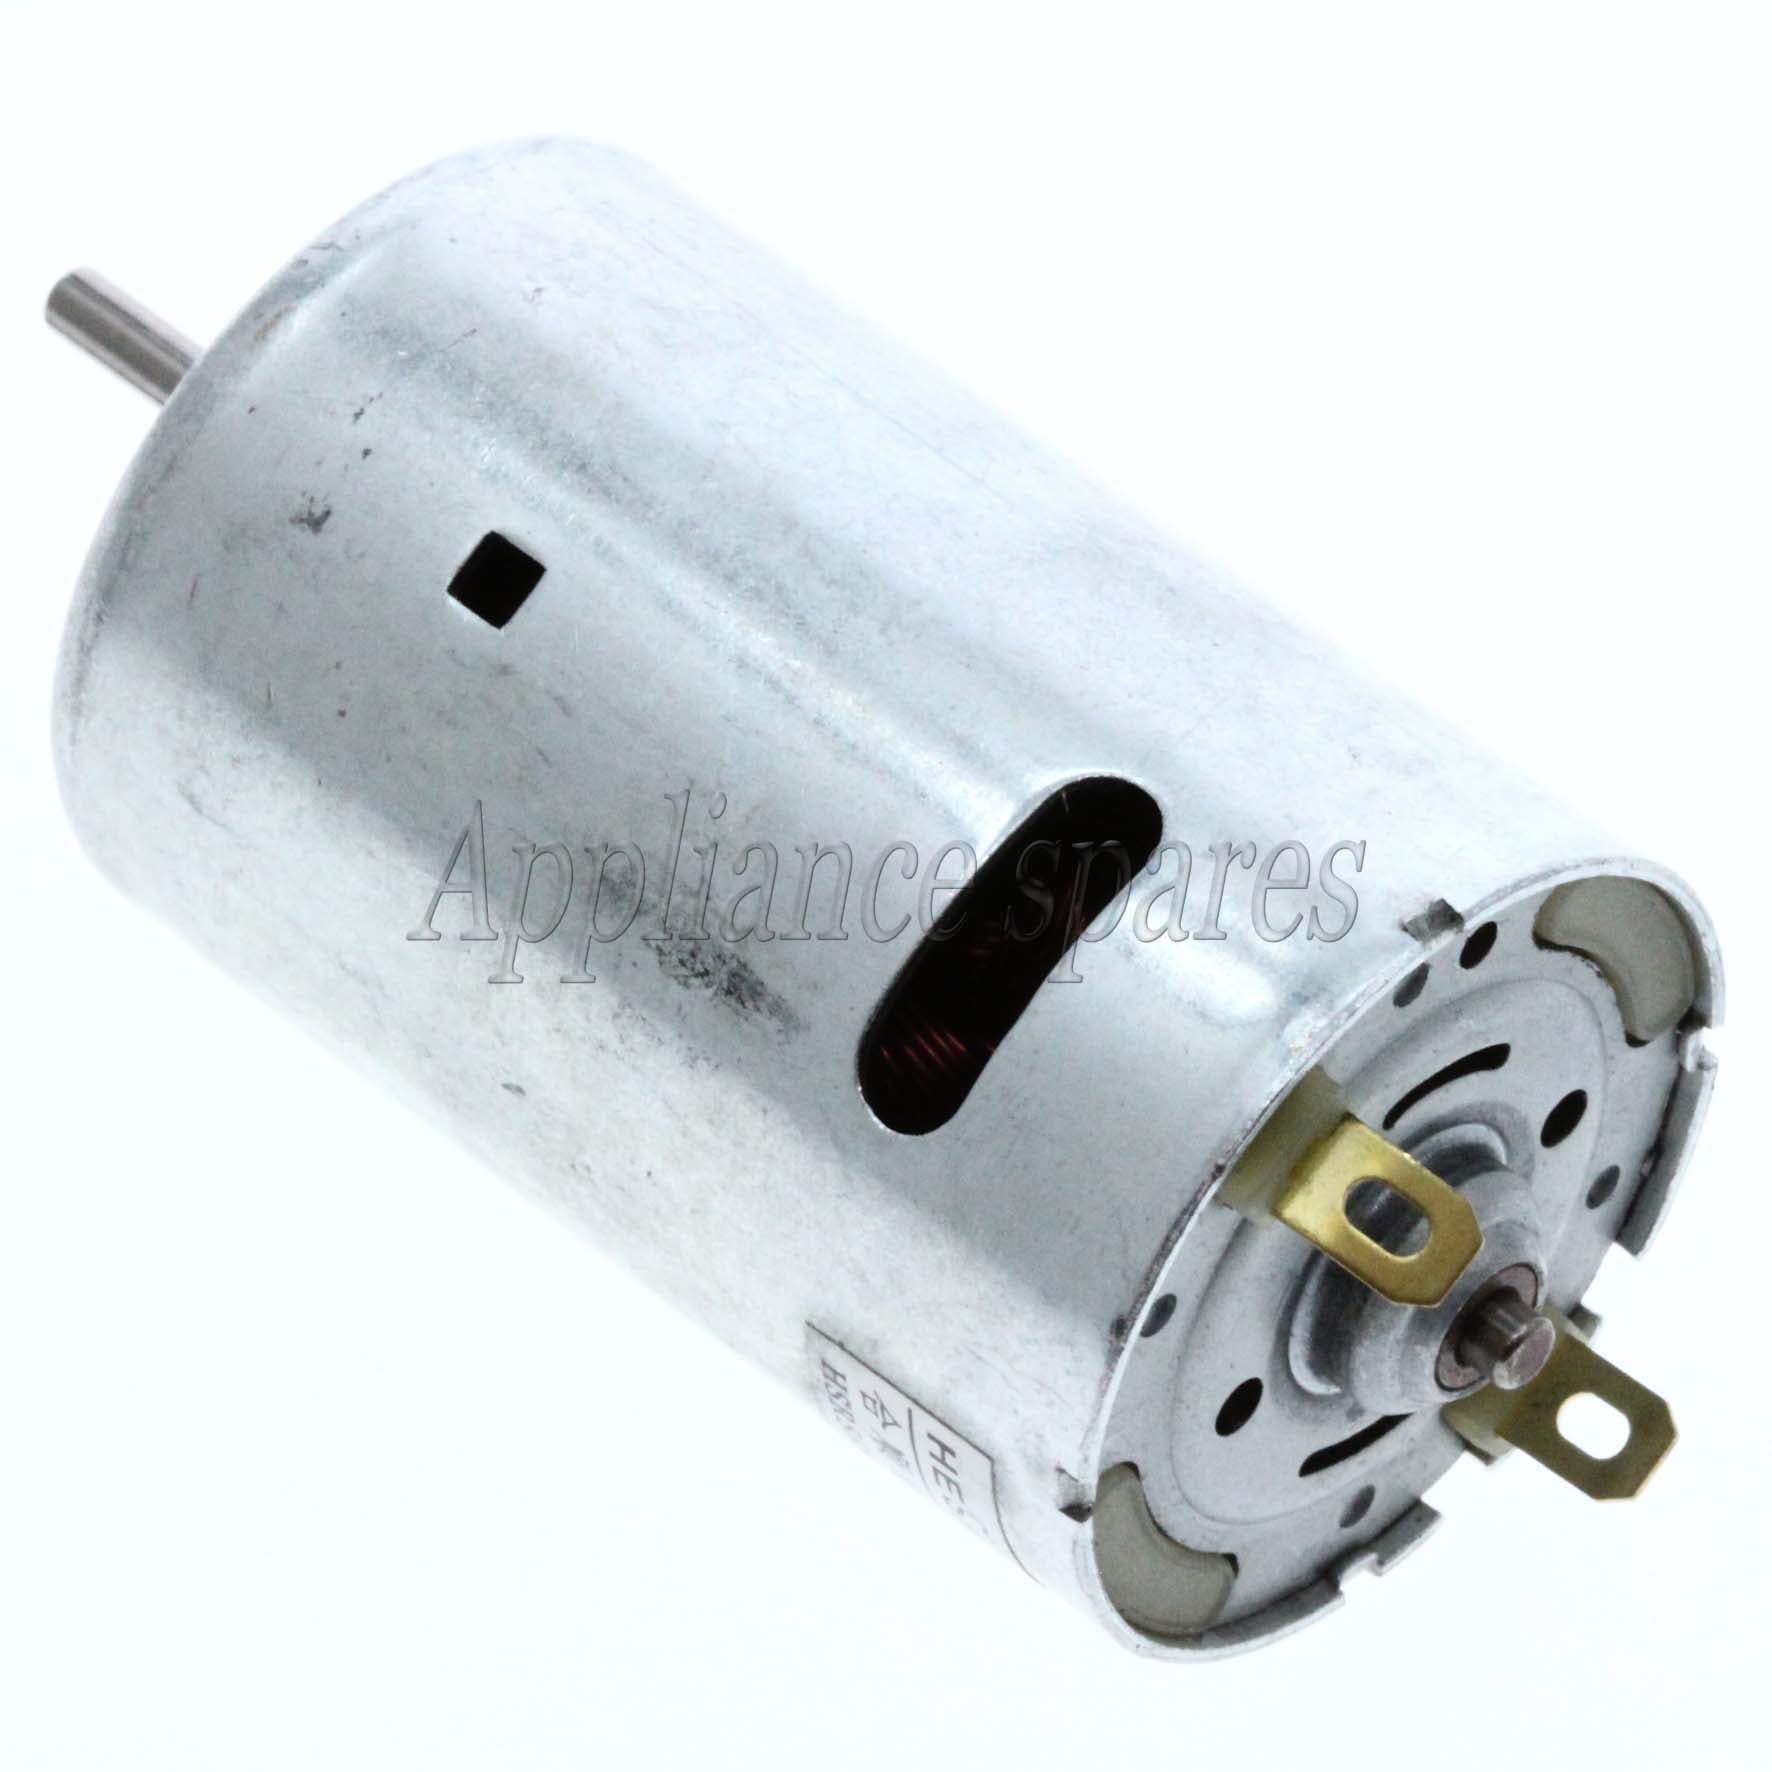 Hoover Handheld Vacuum Cleaner Motor